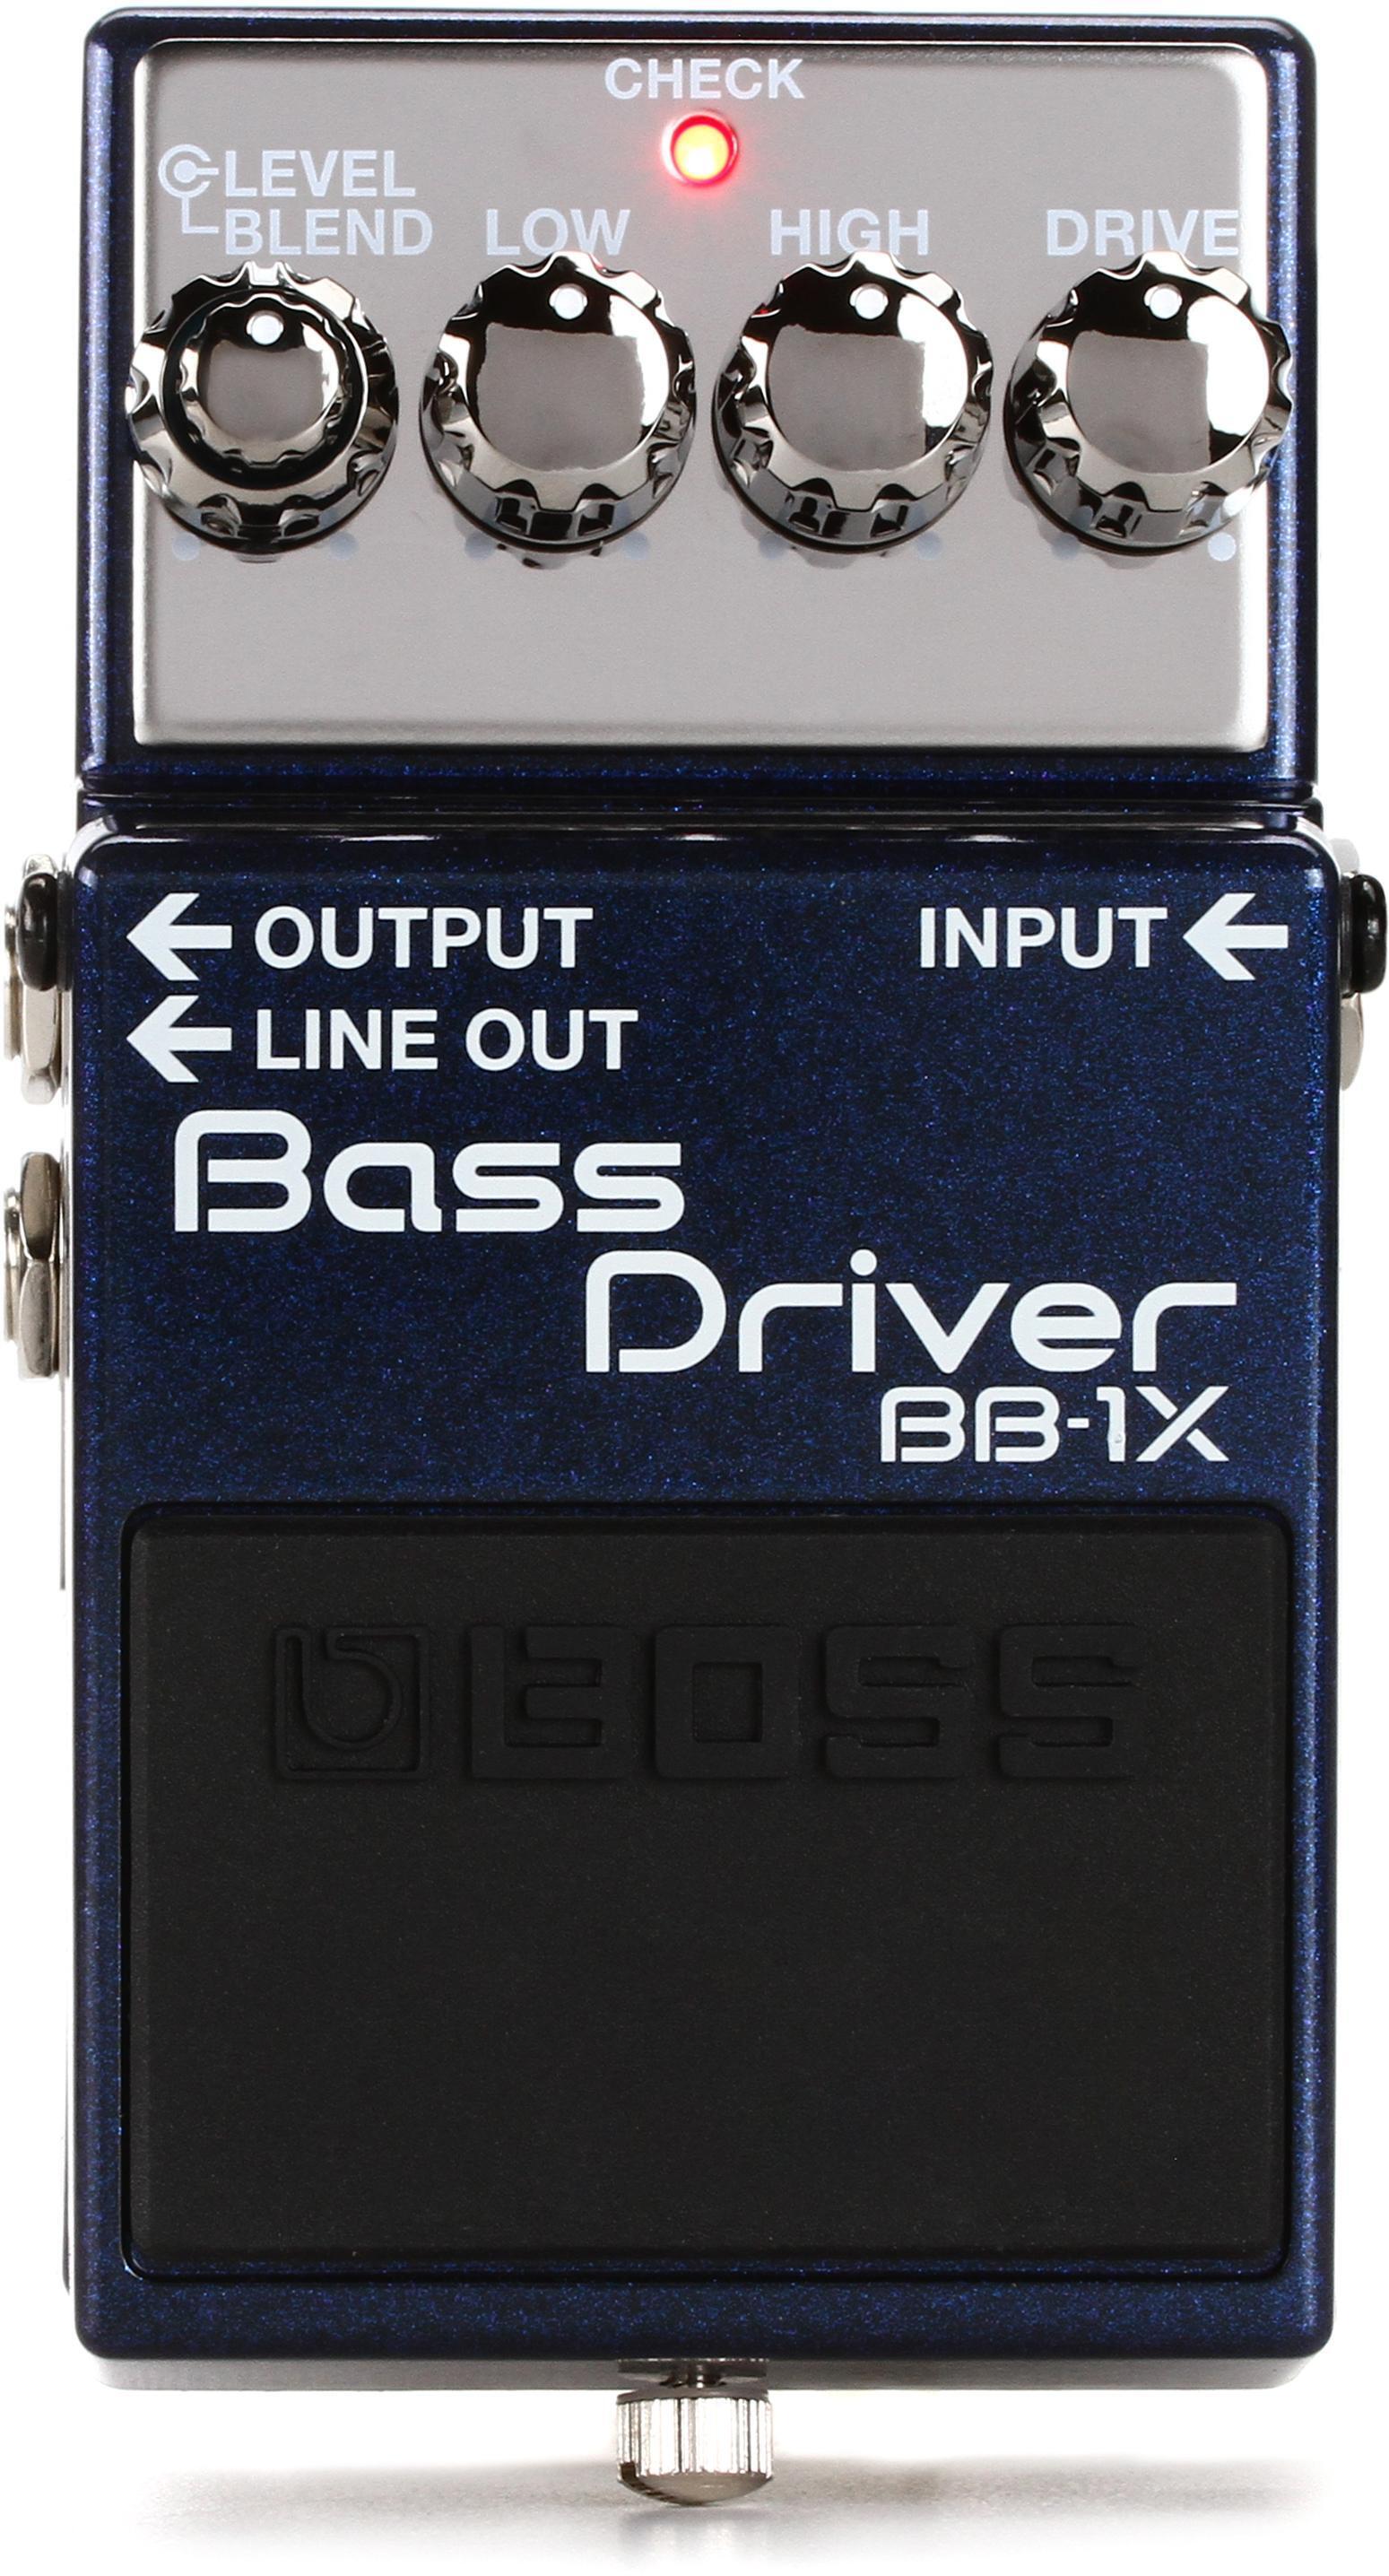 BOSS Bass Driver BB-1X-